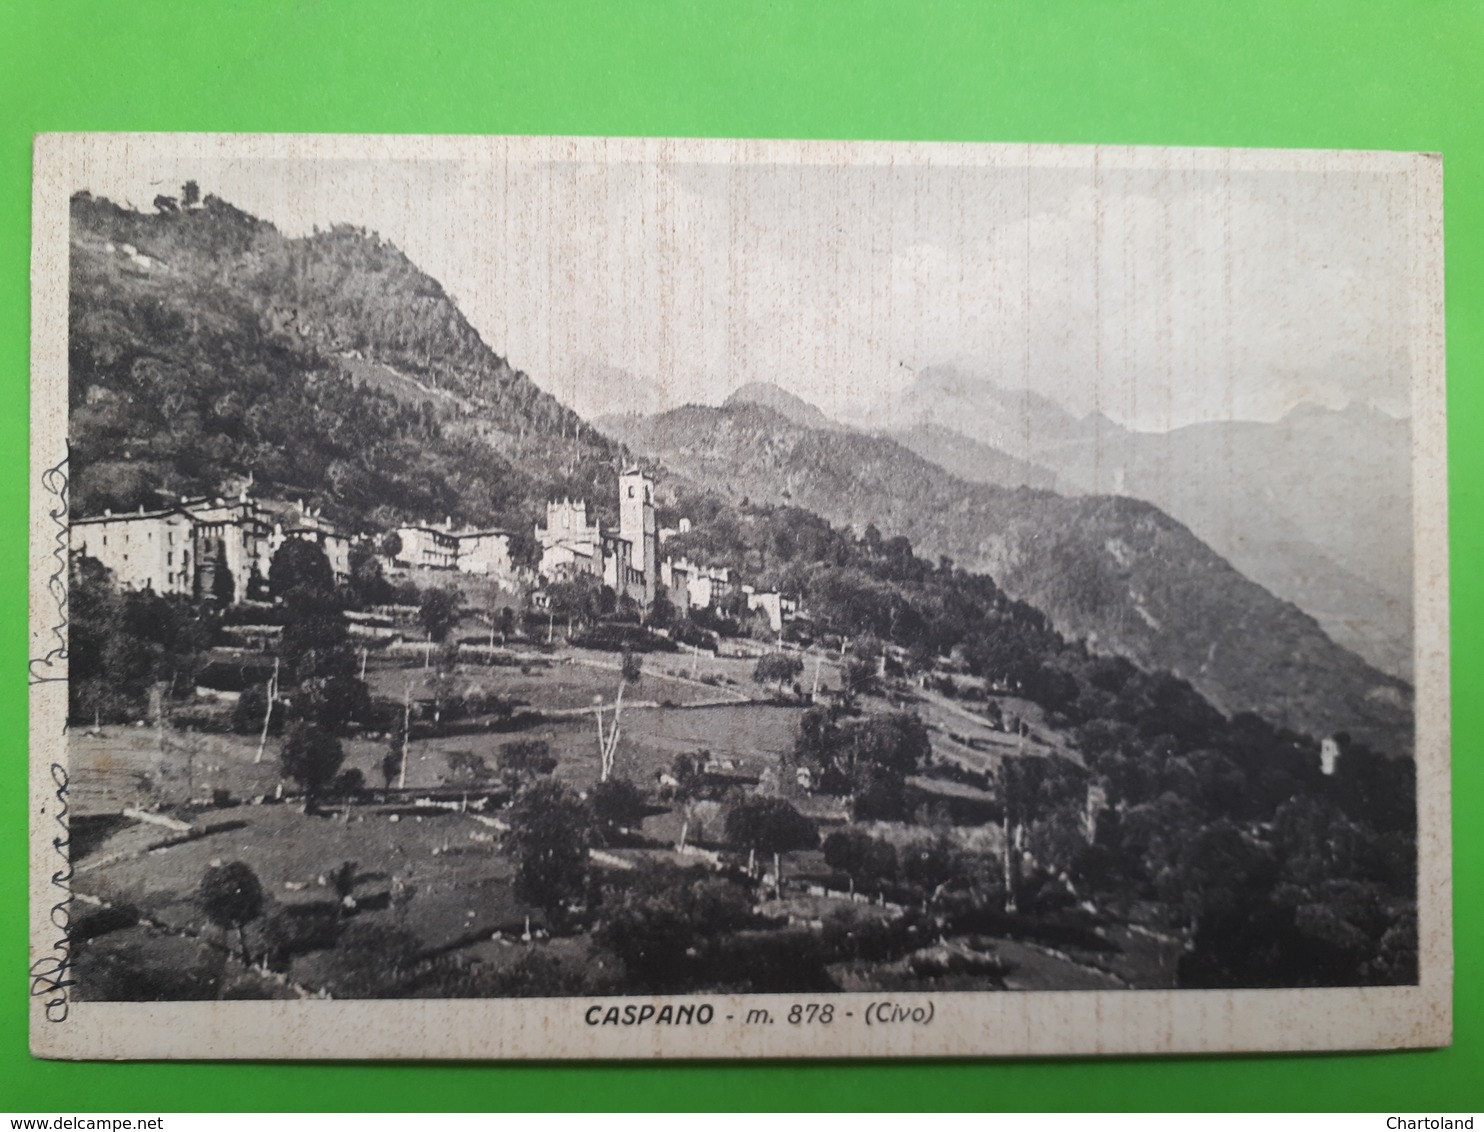 Cartolina - Caspano -m- 878 - (Civo) - 1941 - Sondrio